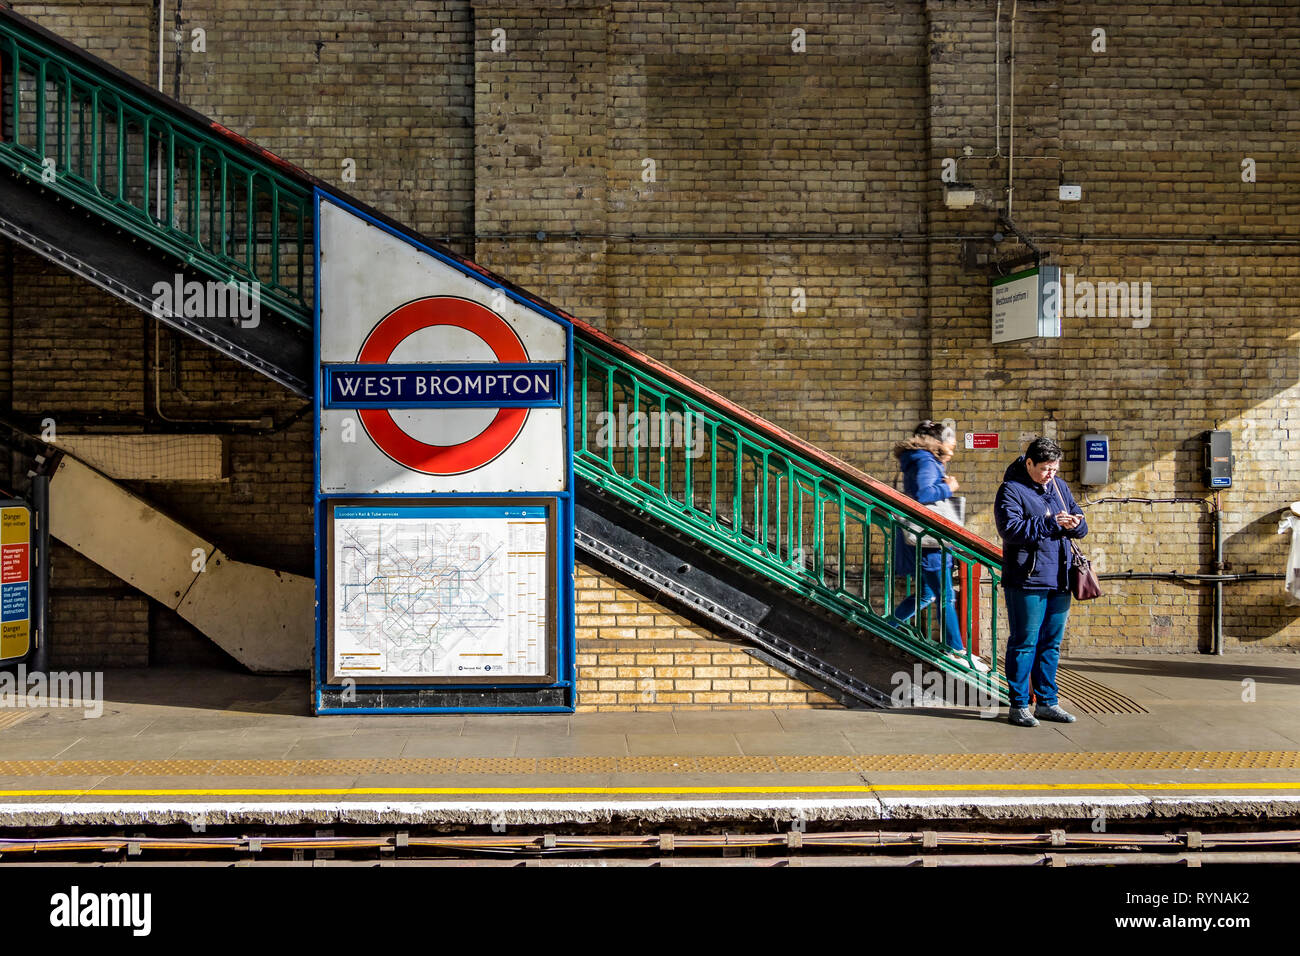 Une femme regarde son téléphone mobile en attendant un métro de la ligne de district de Wimbledon à la station de métro de West Brompton, Londres, Royaume-Uni Banque D'Images